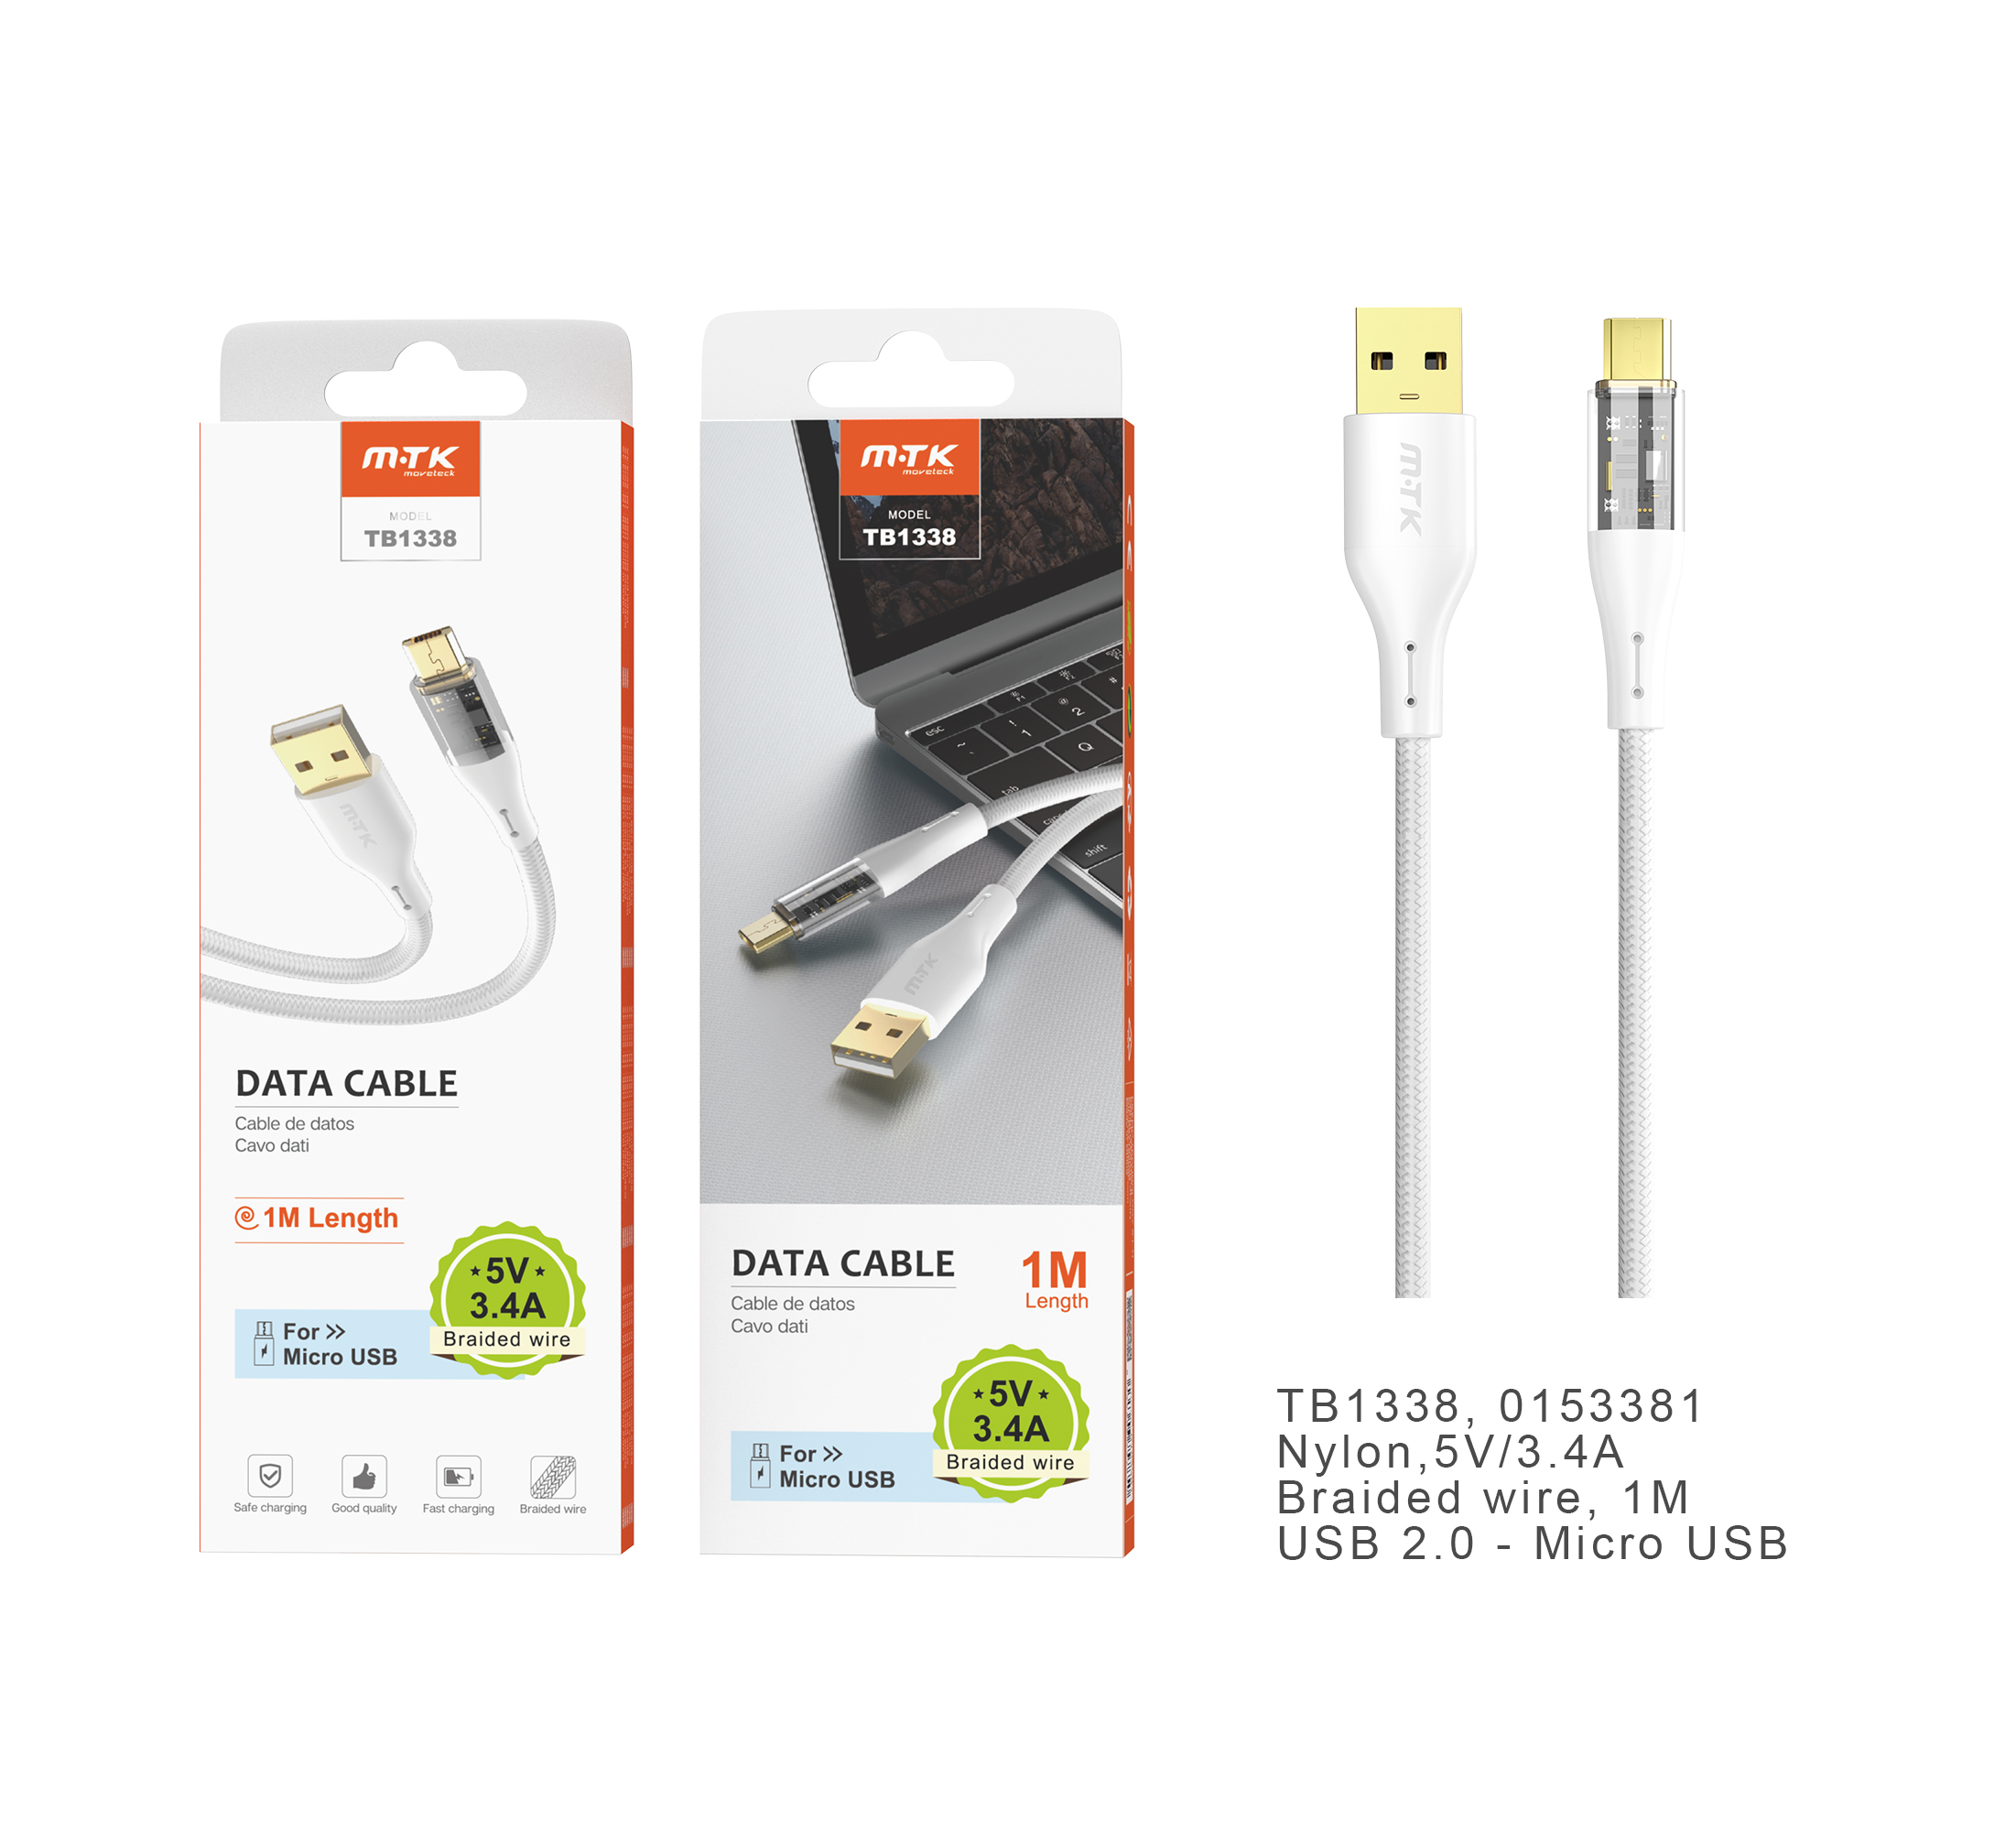 TB1338 BL Cable de datos Smith nylon trenzado para Micro USB, 3.4A, 1M, Blanco